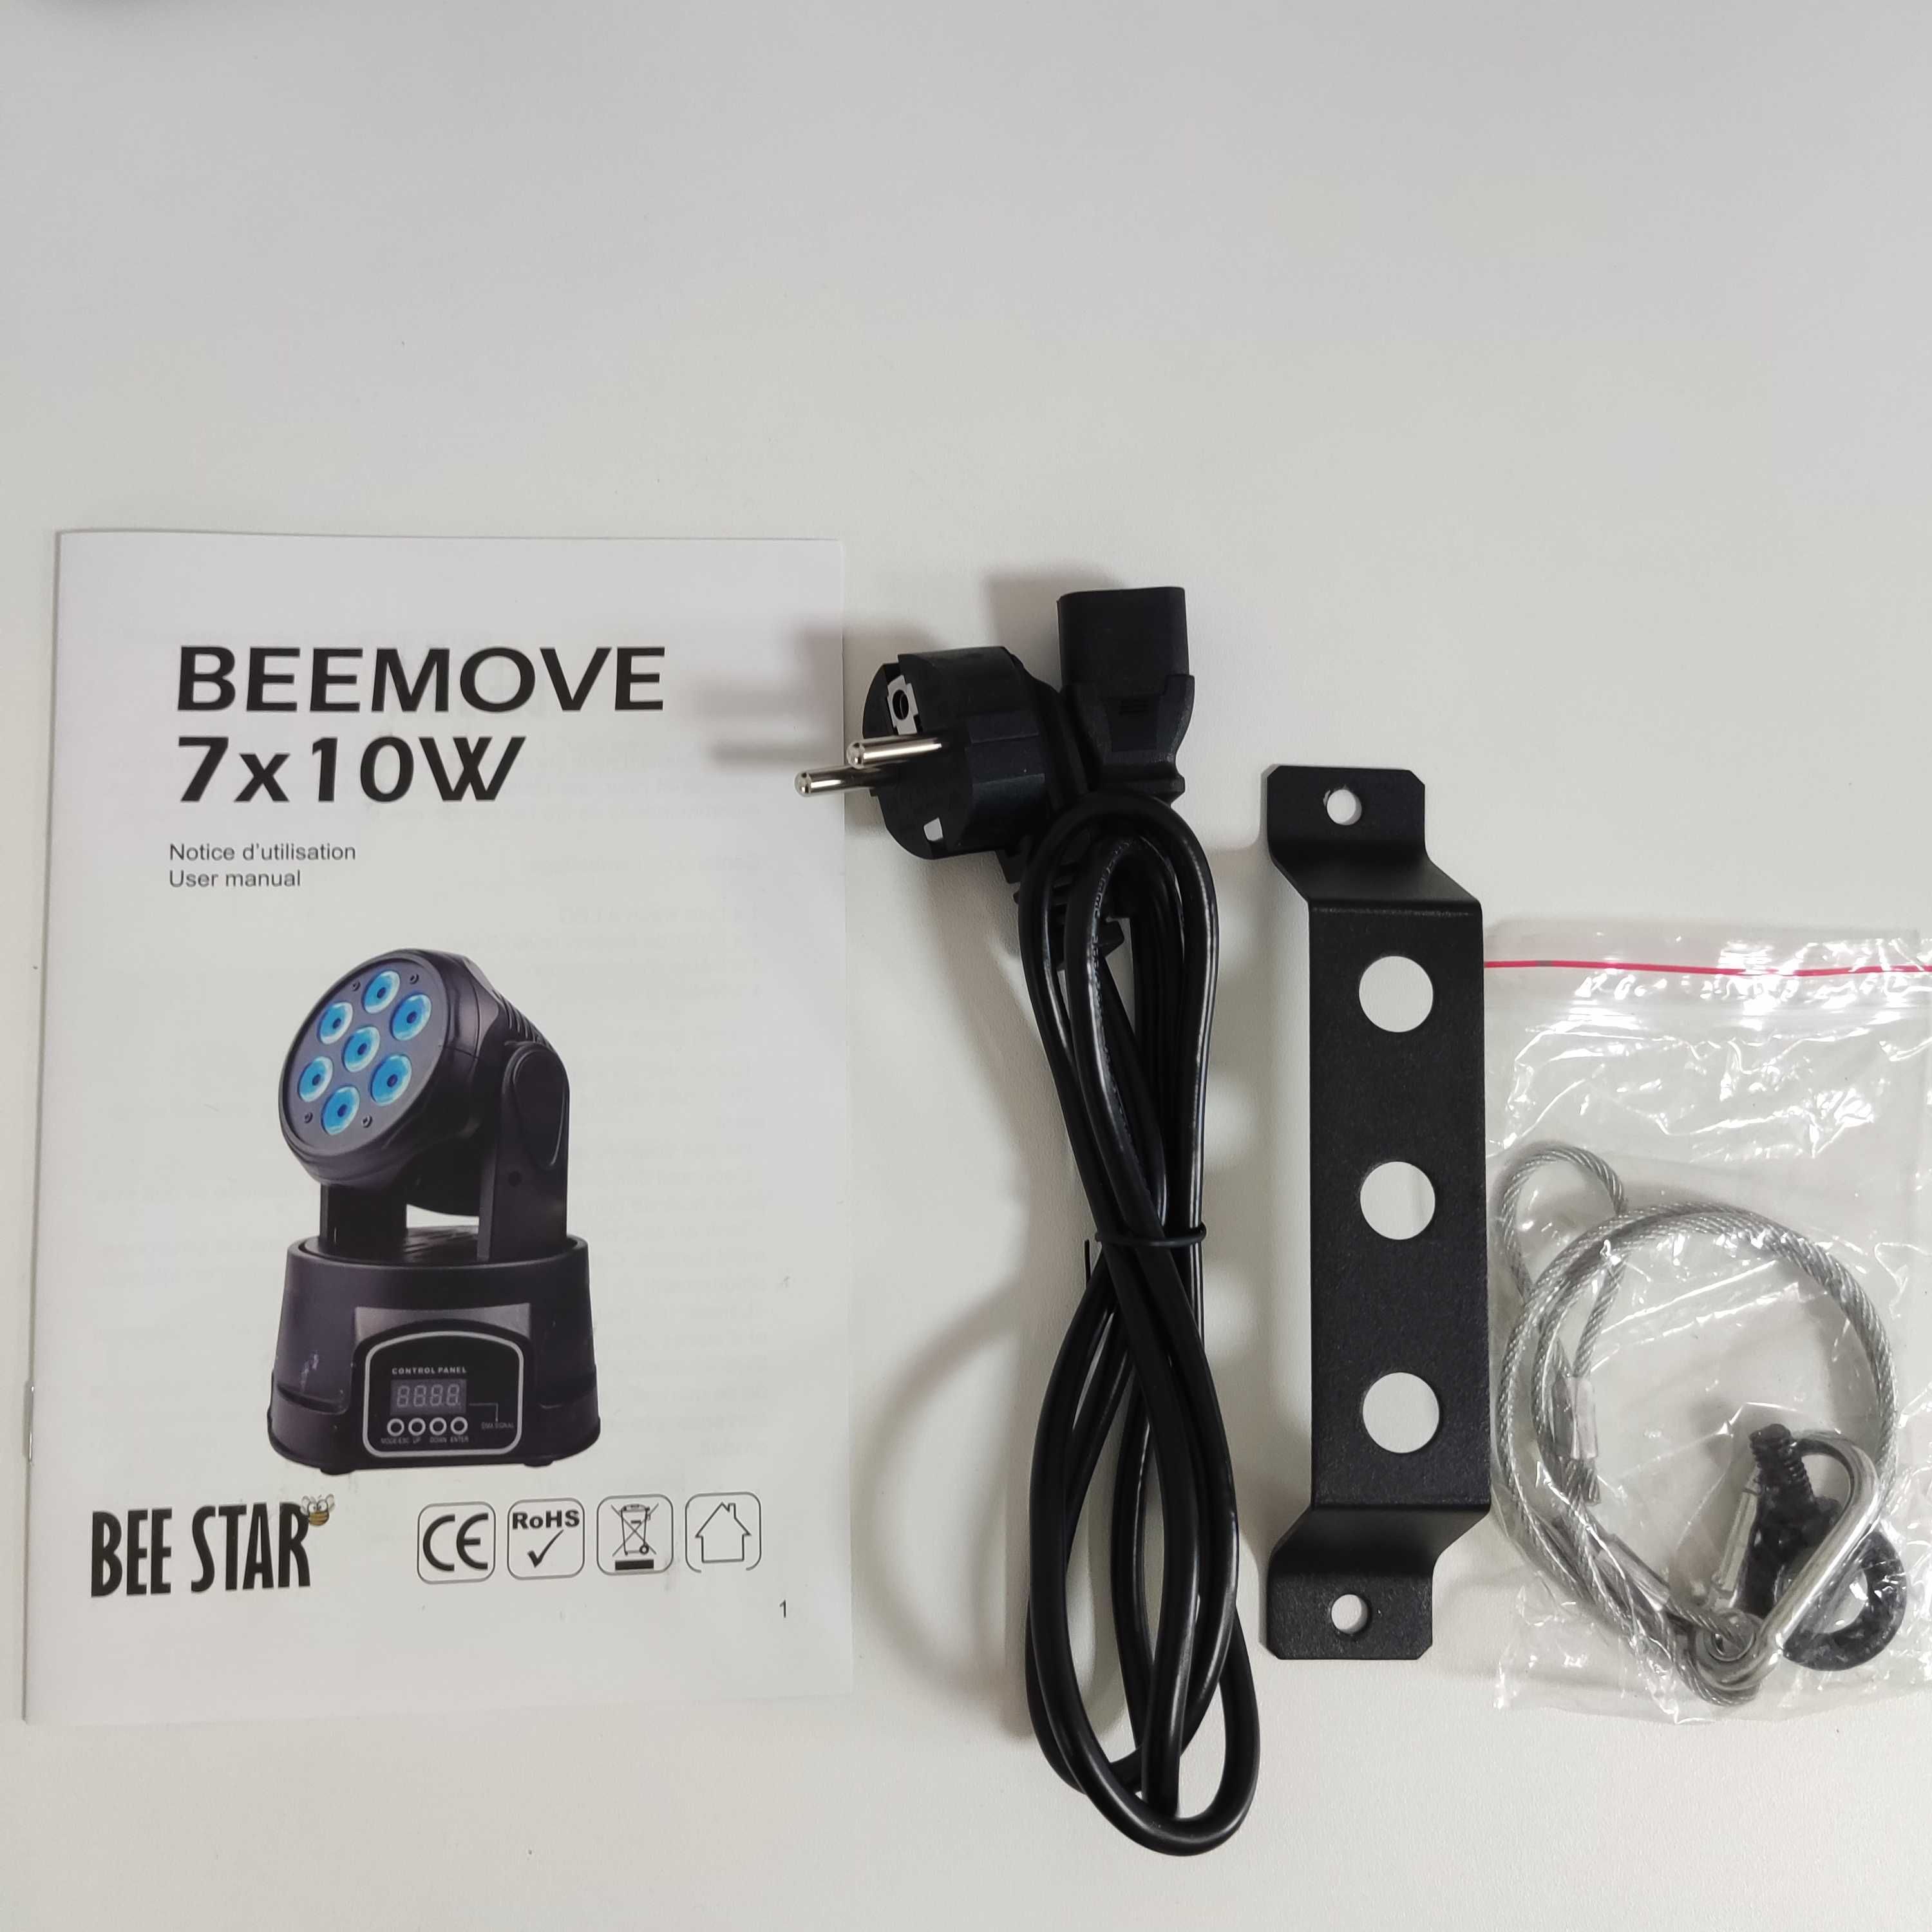 WASH LED - 7*10W DMX - Beemove Wash LED